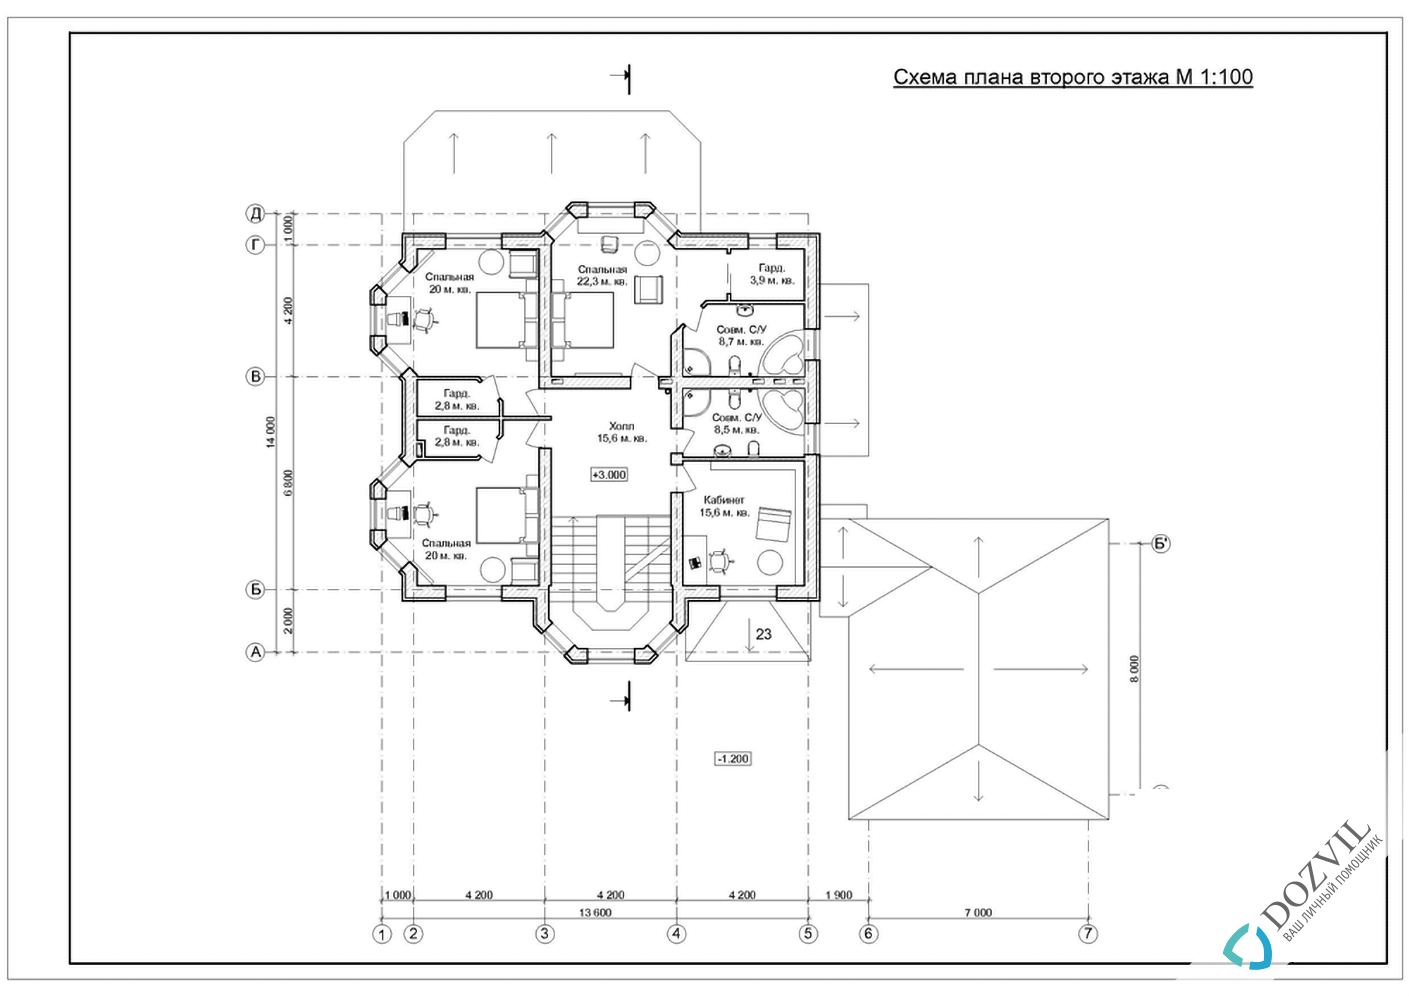 Оформление гаража > Гараж на участке рядом с жилым или садовым домом > 2 этап - Разработка эскиза намерений строительства